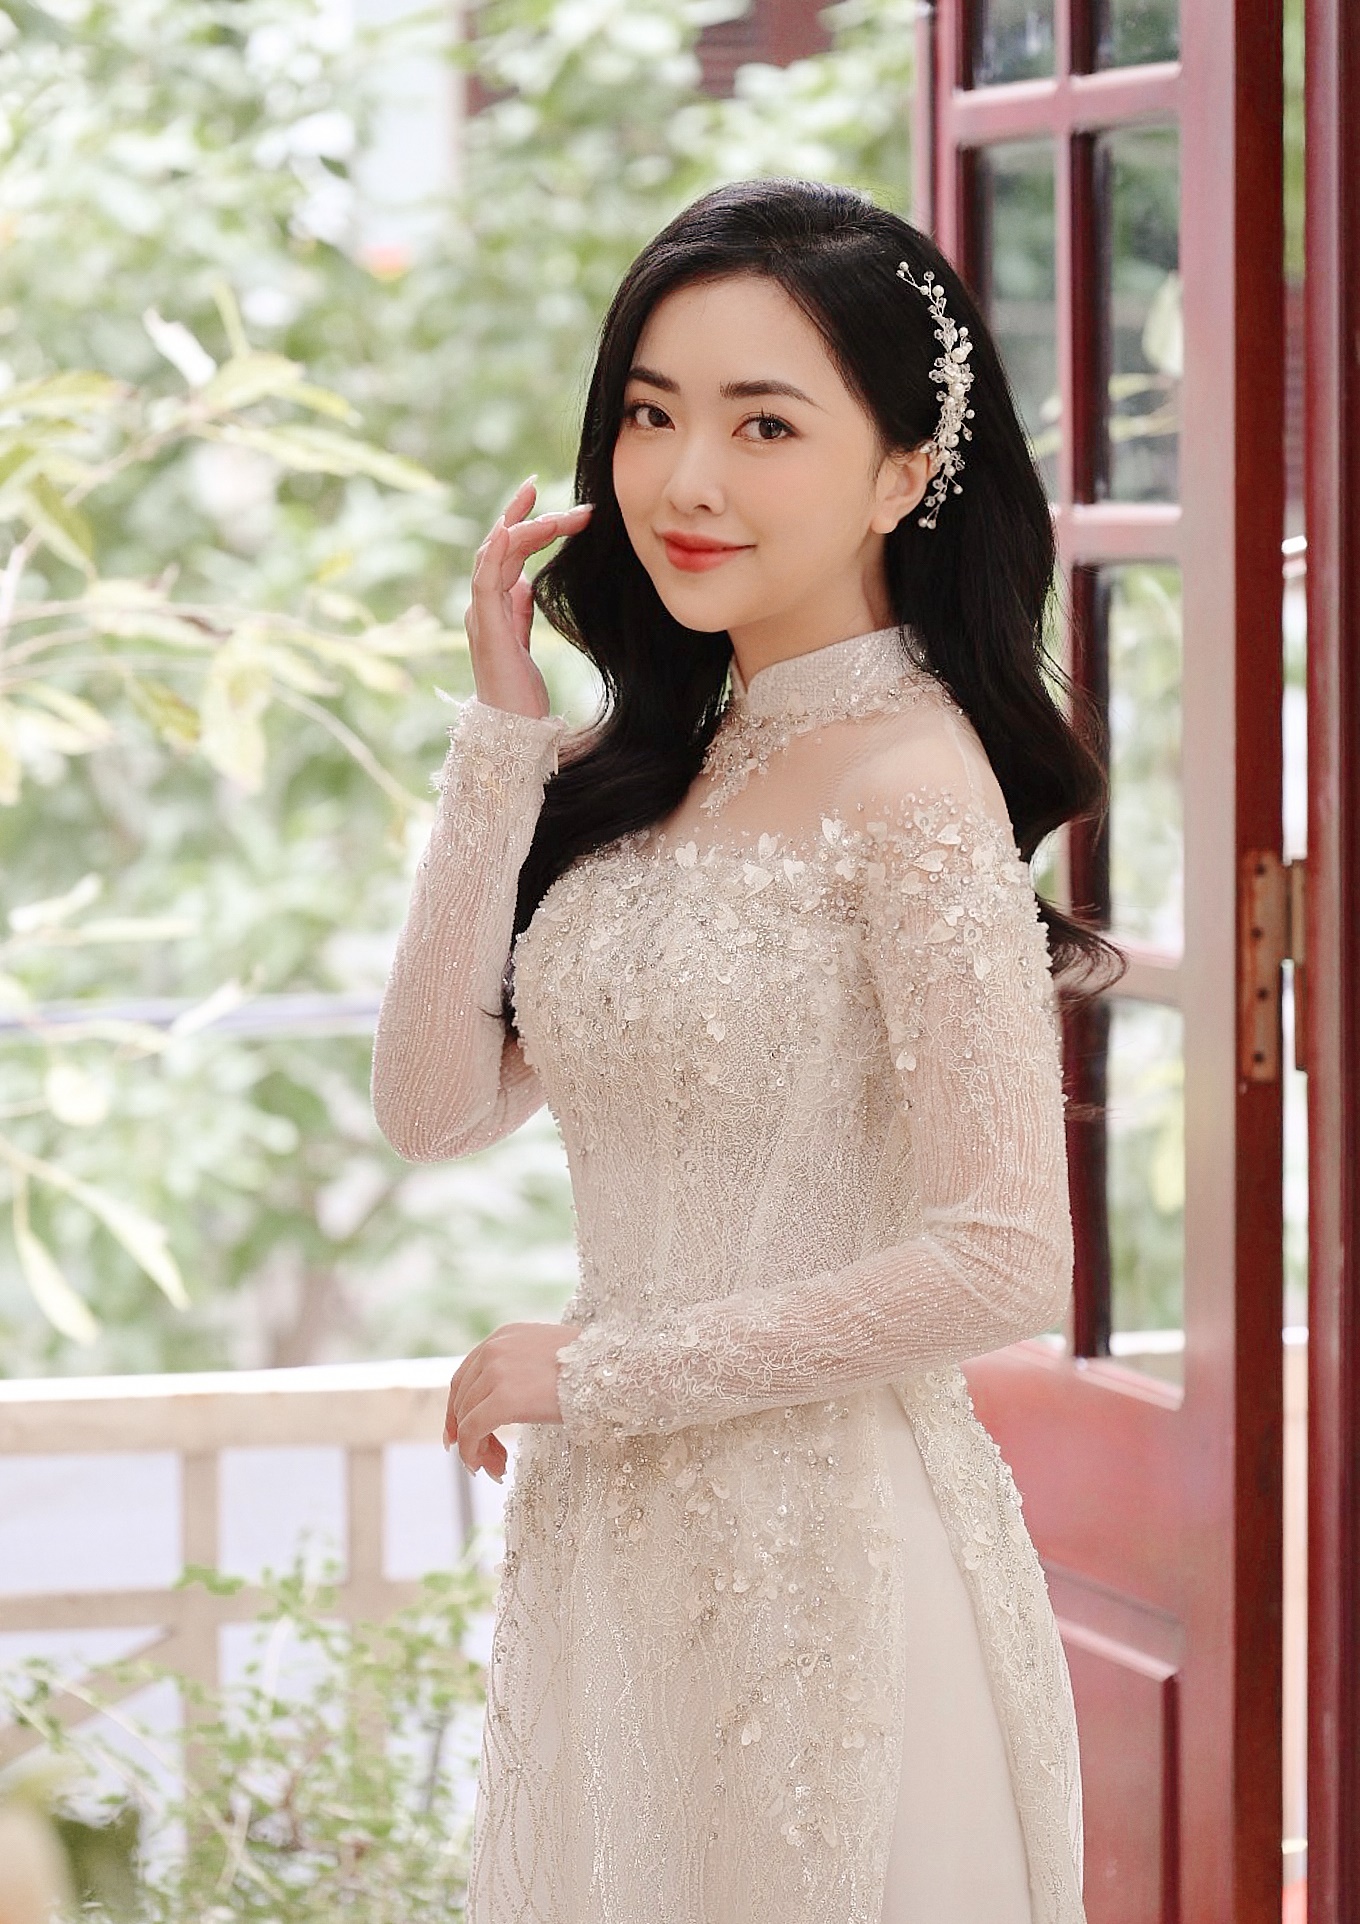 Cận cảnh nhan sắc cô dâu của Hà Đức Chinh: xinh đẹp không thua kém ...